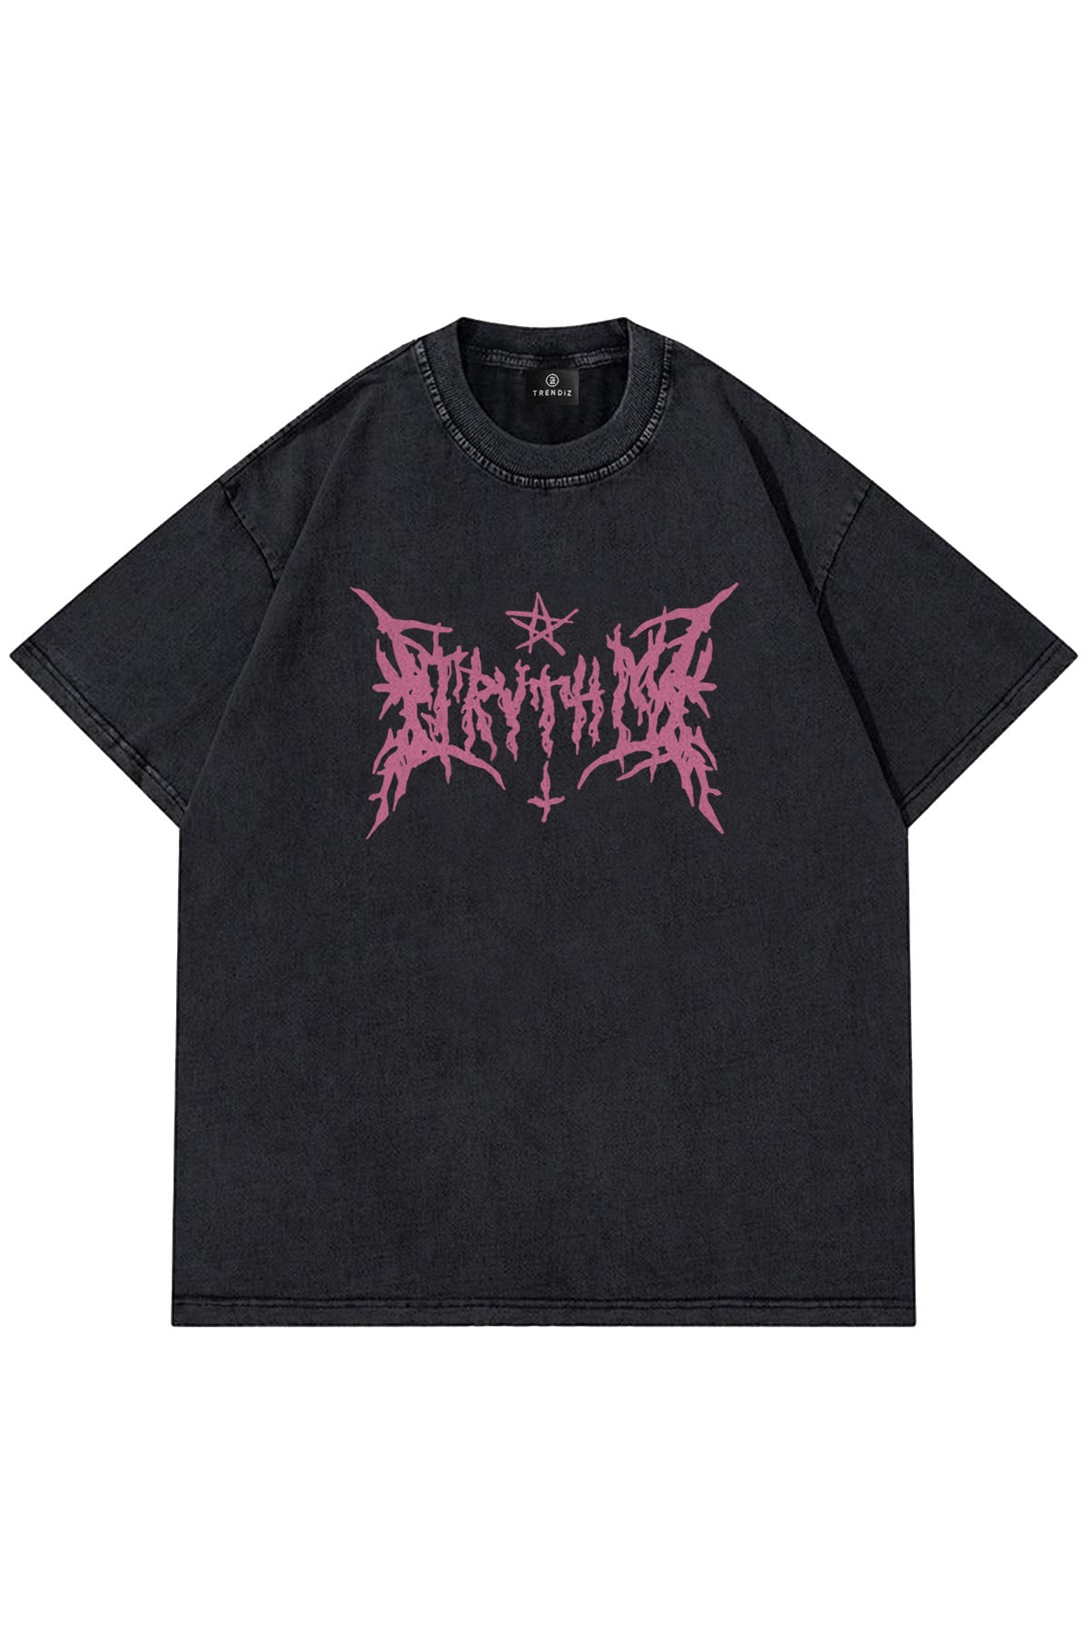 Trendiz Unisex Gothic Harajuku Antrasit Tshirt